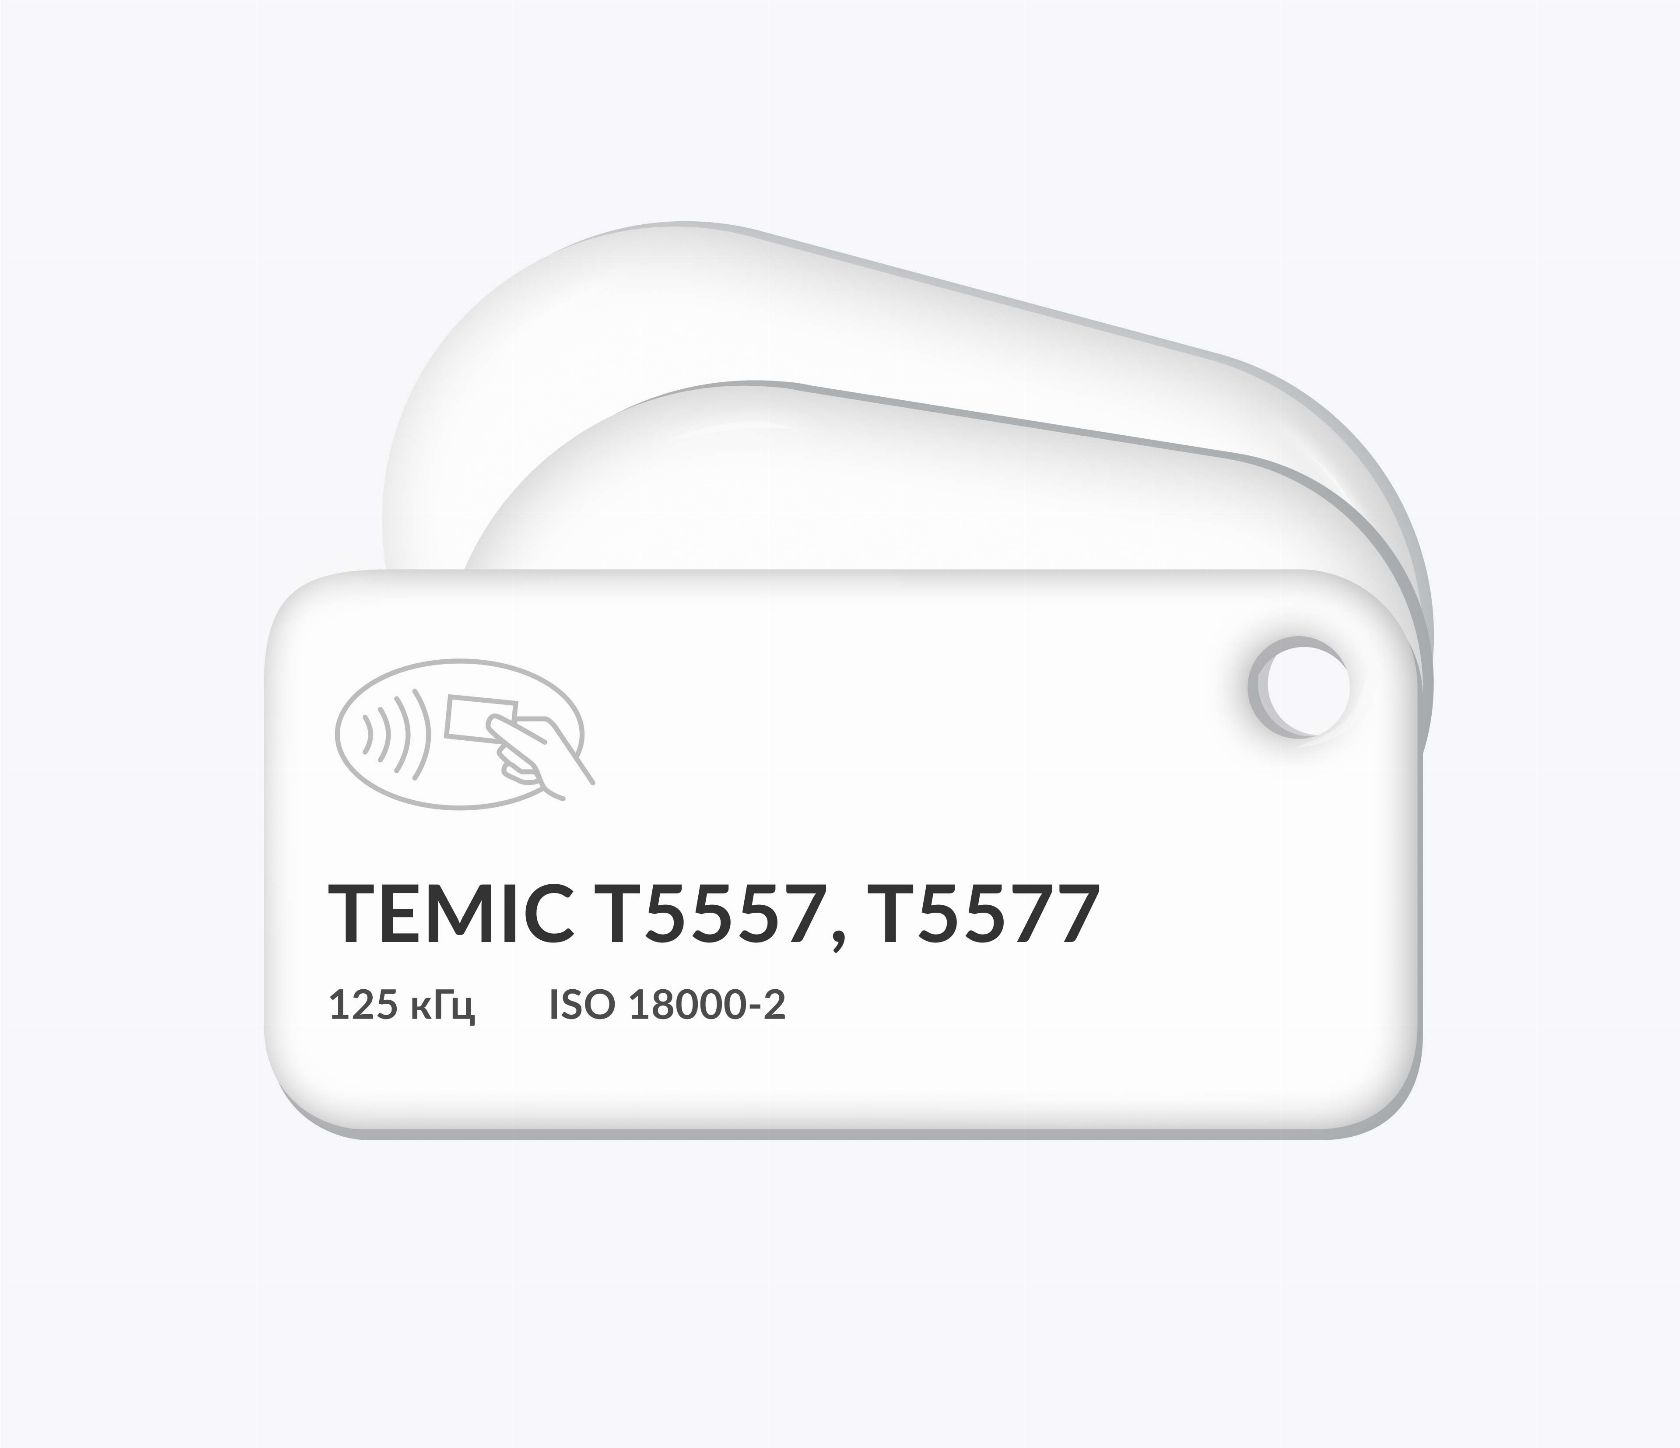 RFID-брелоки NEOKEY® с чипом T5557, T5577 Temic и вашим логотипом RFID-брелоки NEOKEY® с чипом T5557, T5577 Temic и вашим логотипом